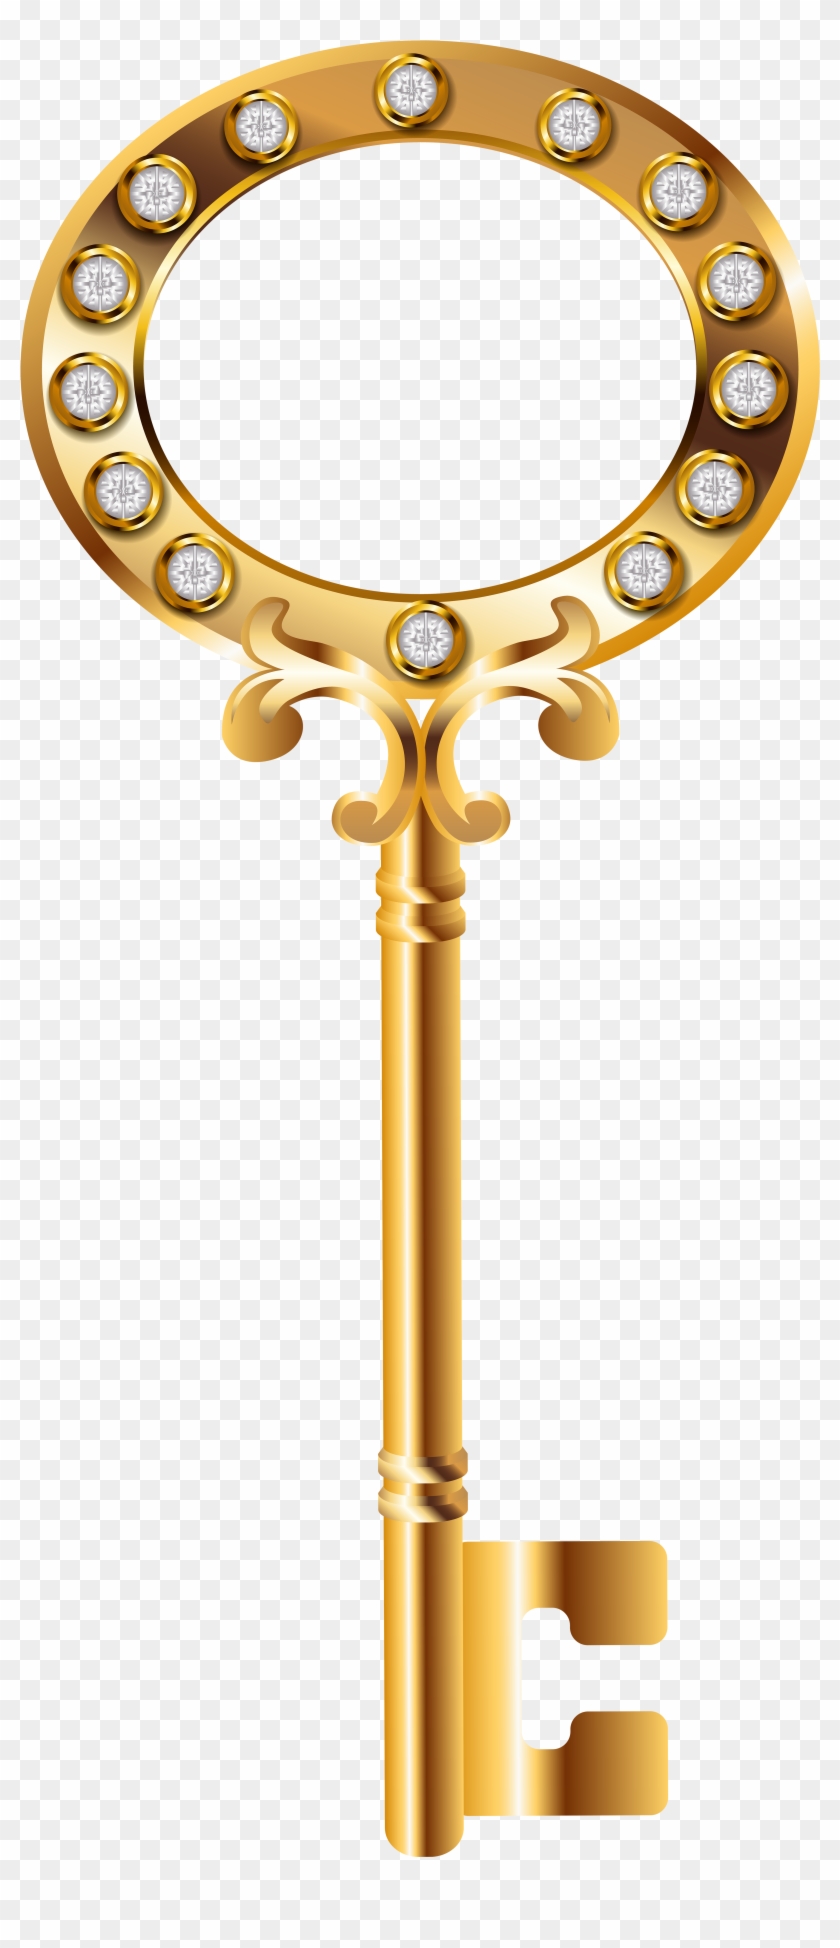 Golden Key Png Clip Art Image - Transparent Gold Key Png